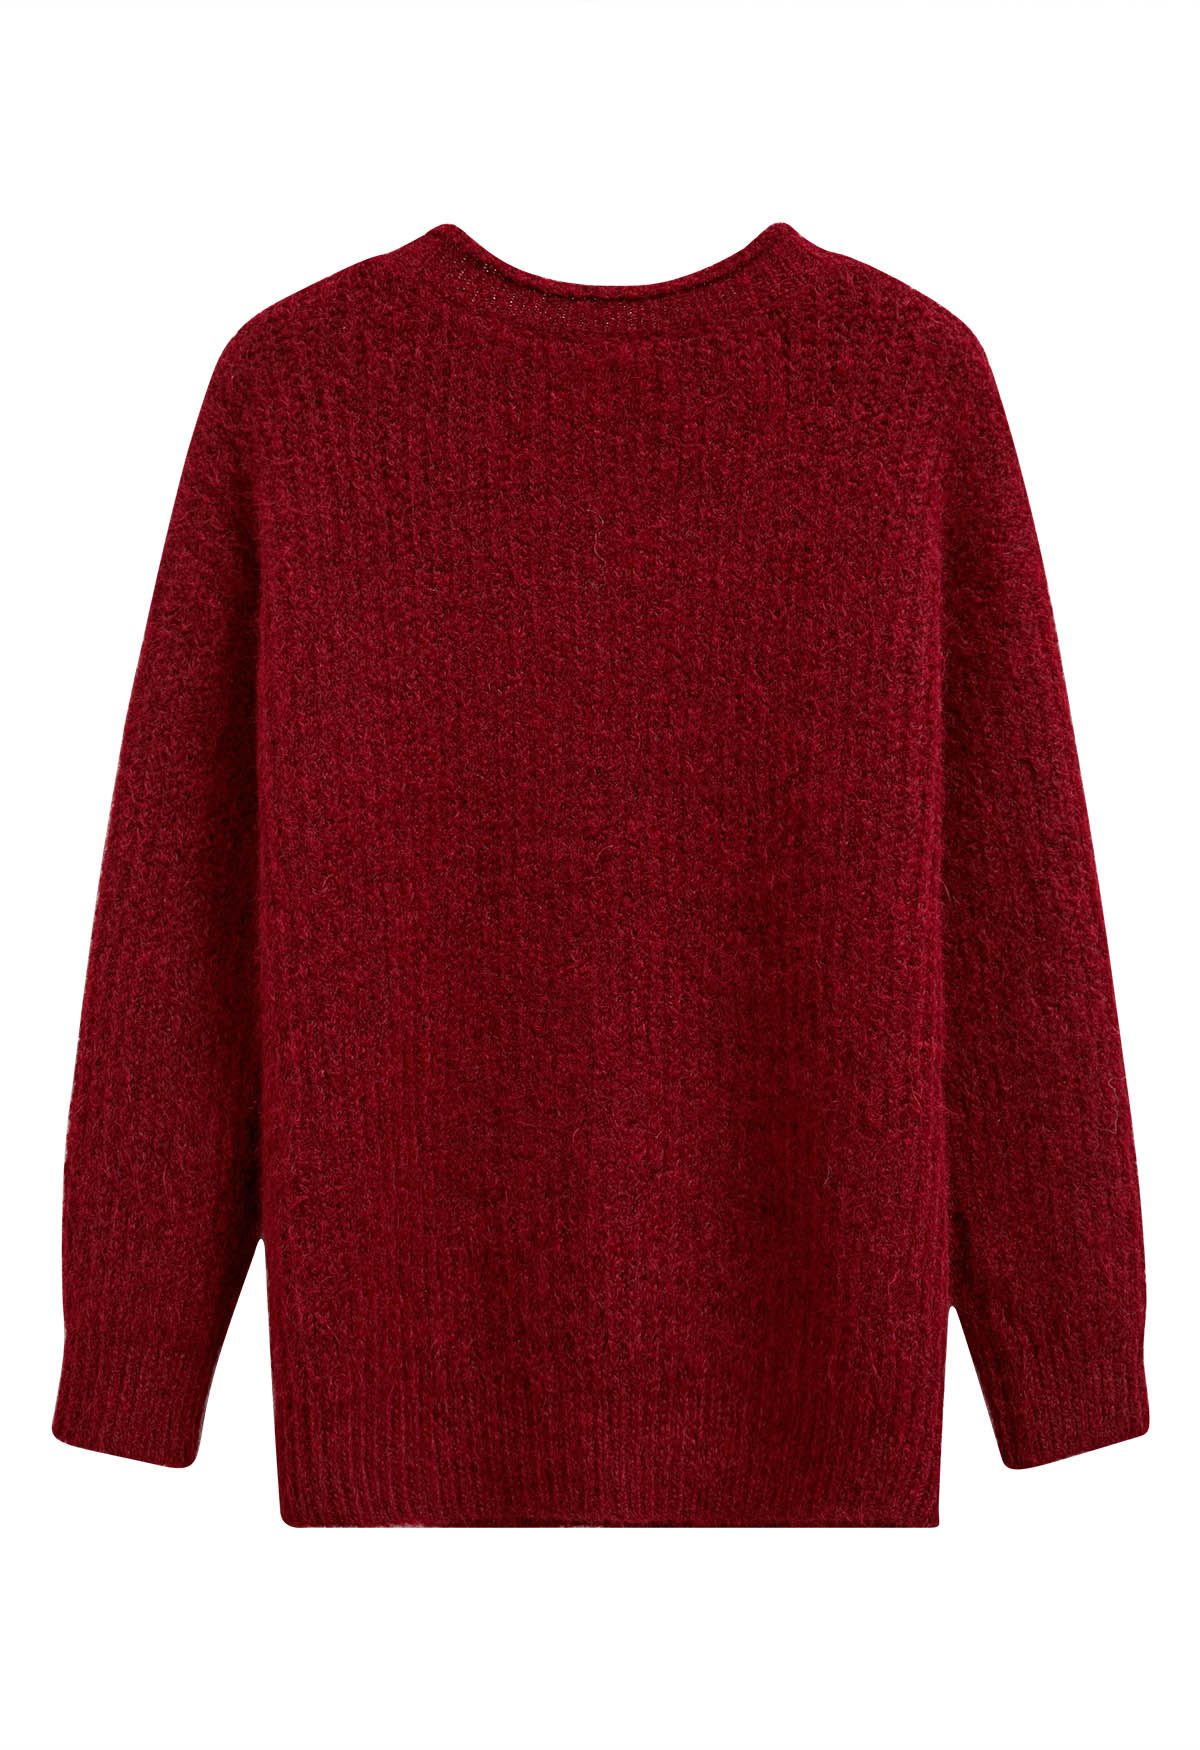 Suéter de punto borroso decorado con cremallera en rojo